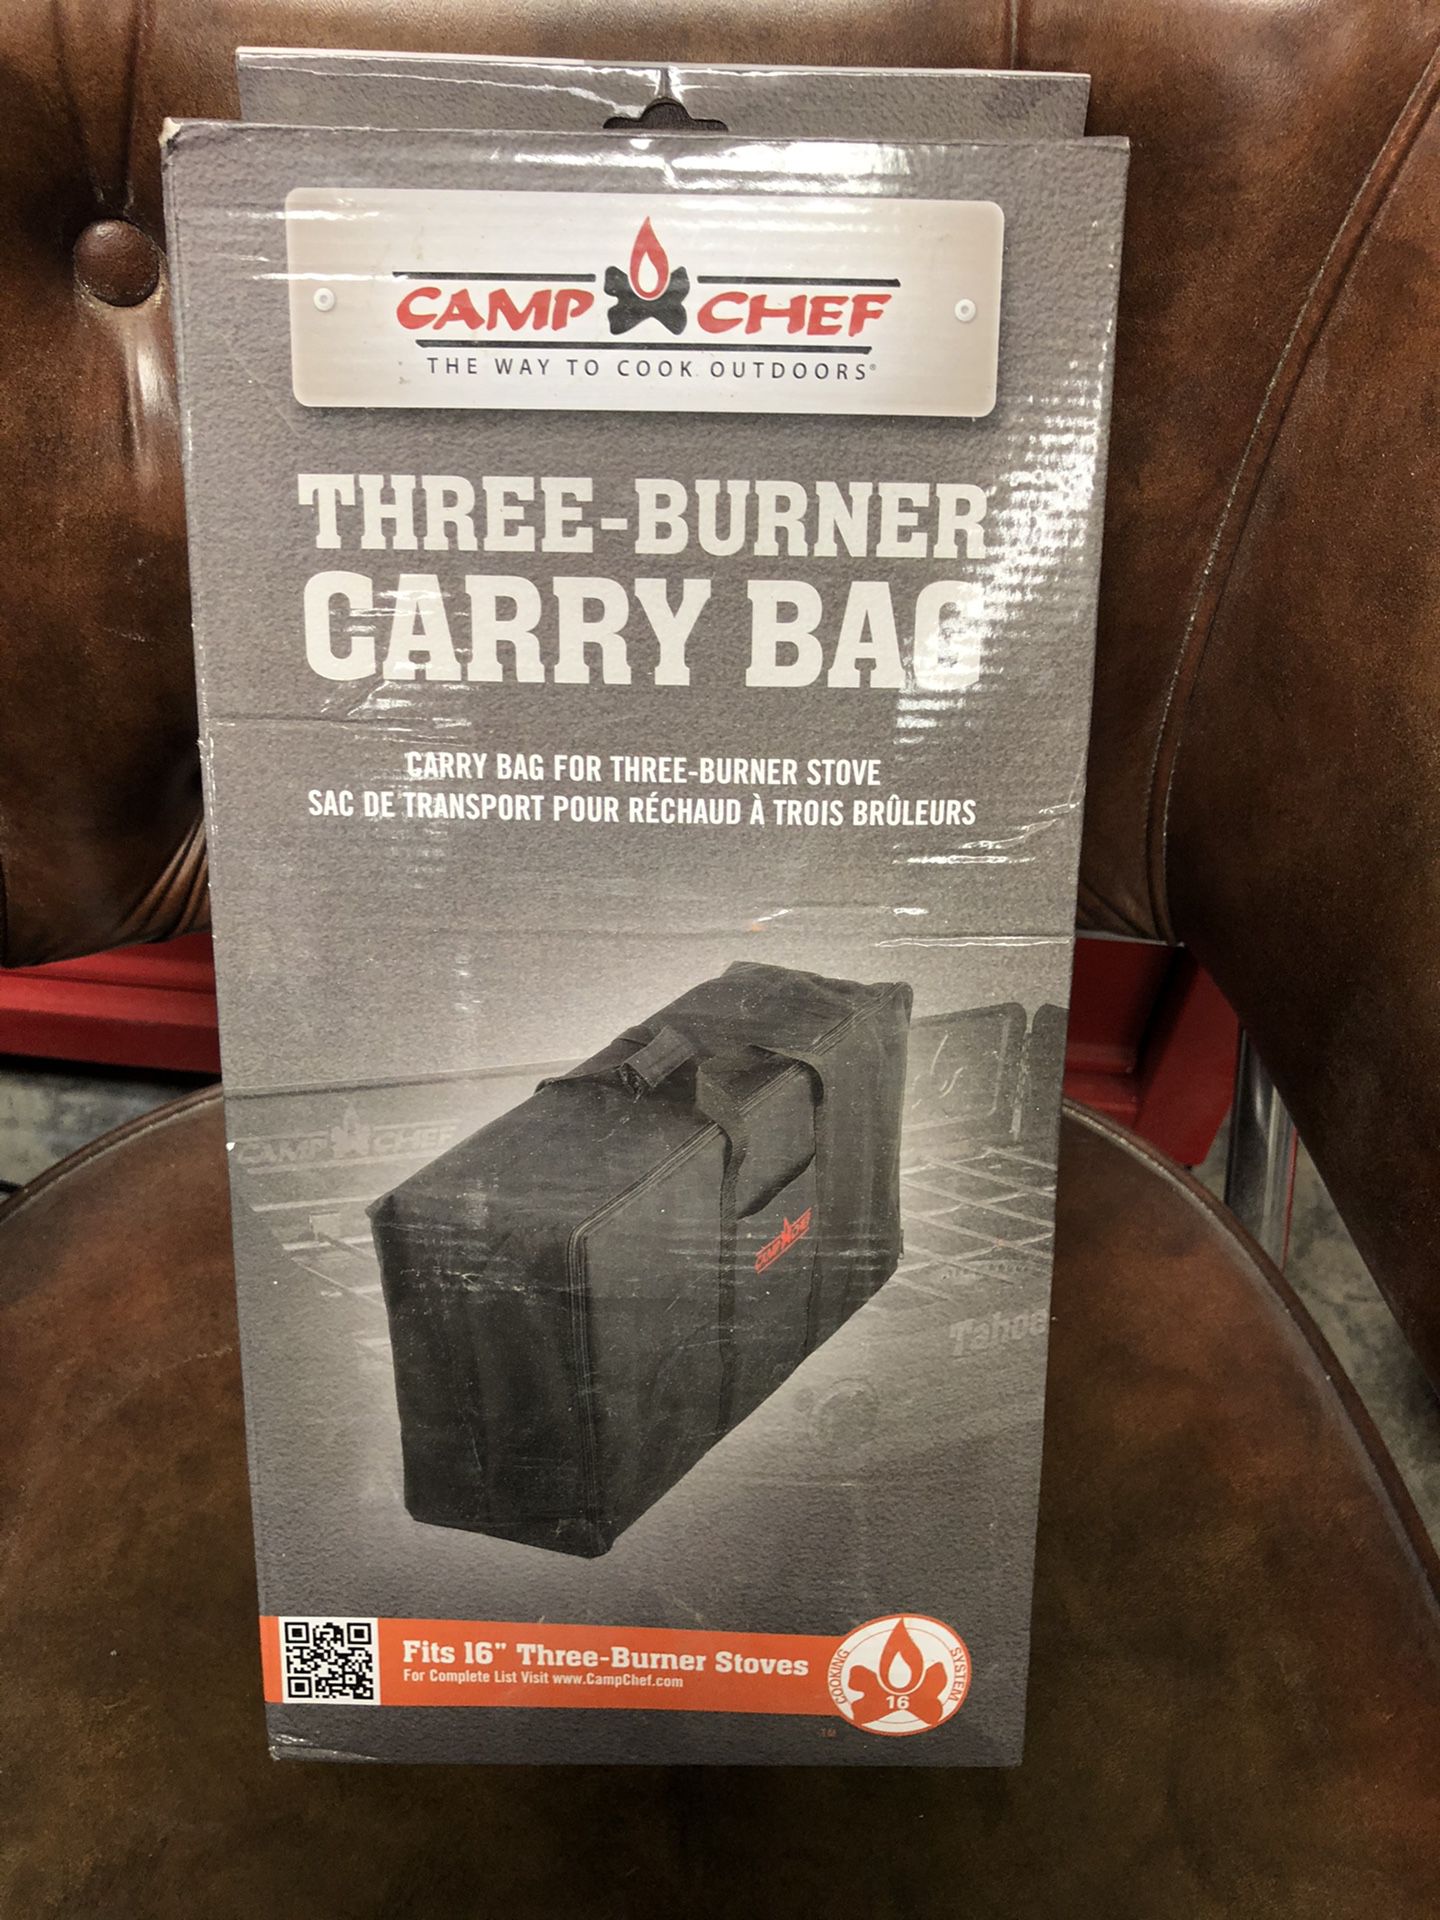 Camp chef 3 burner carry bag